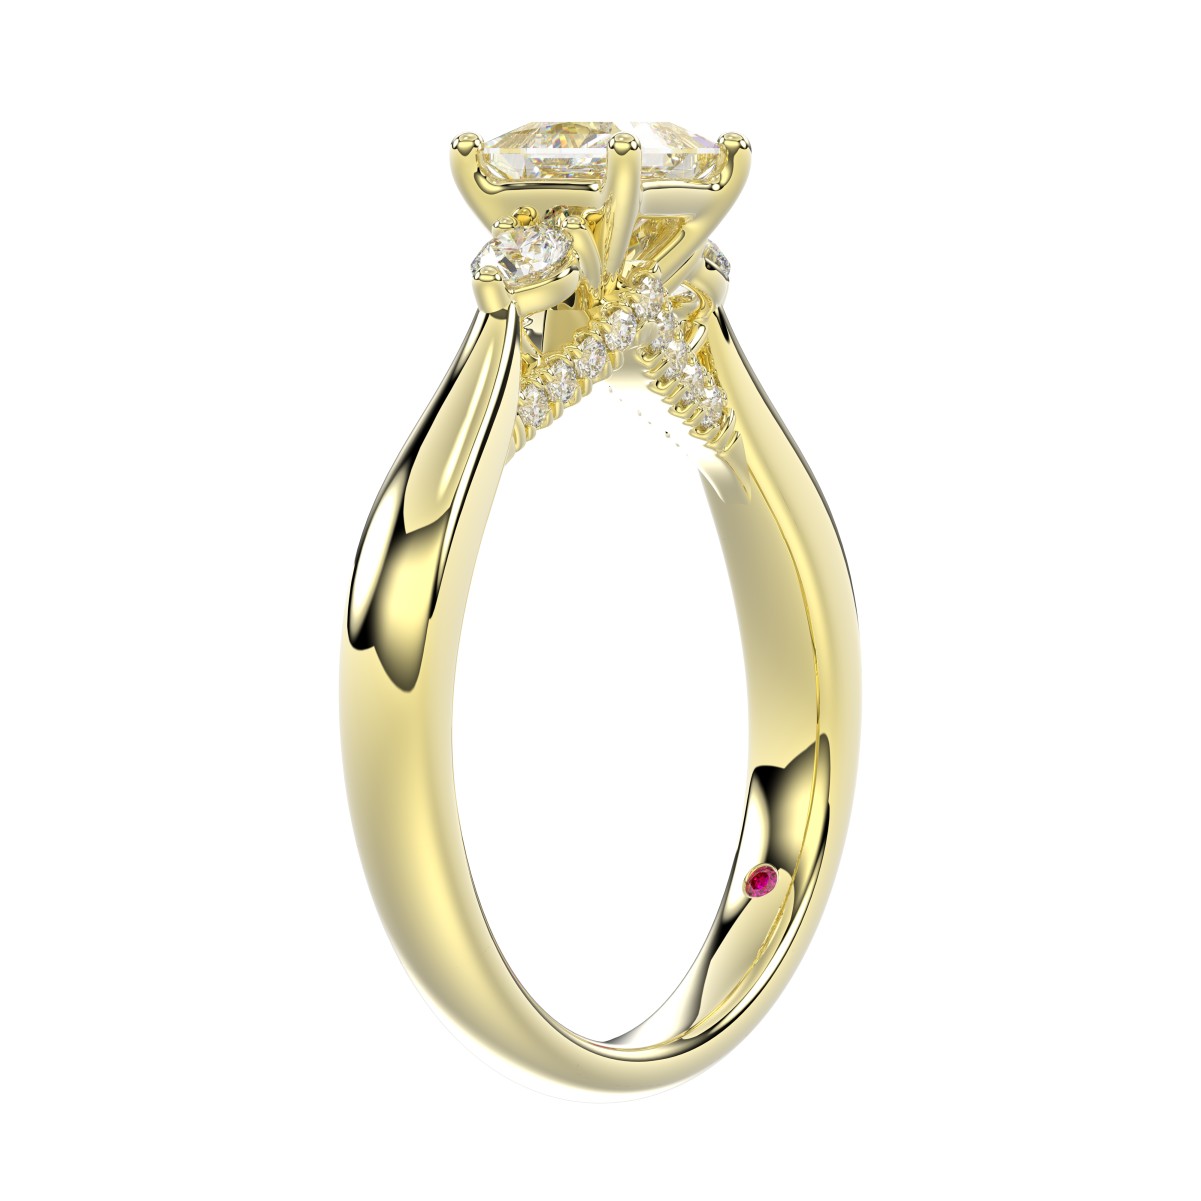 18K YELLOW GOLD 1CT ROUND/PRINCESS DIAMOND LADIES RING( CENTER STONE PRINCESS DIAMOND 3/4 CT)